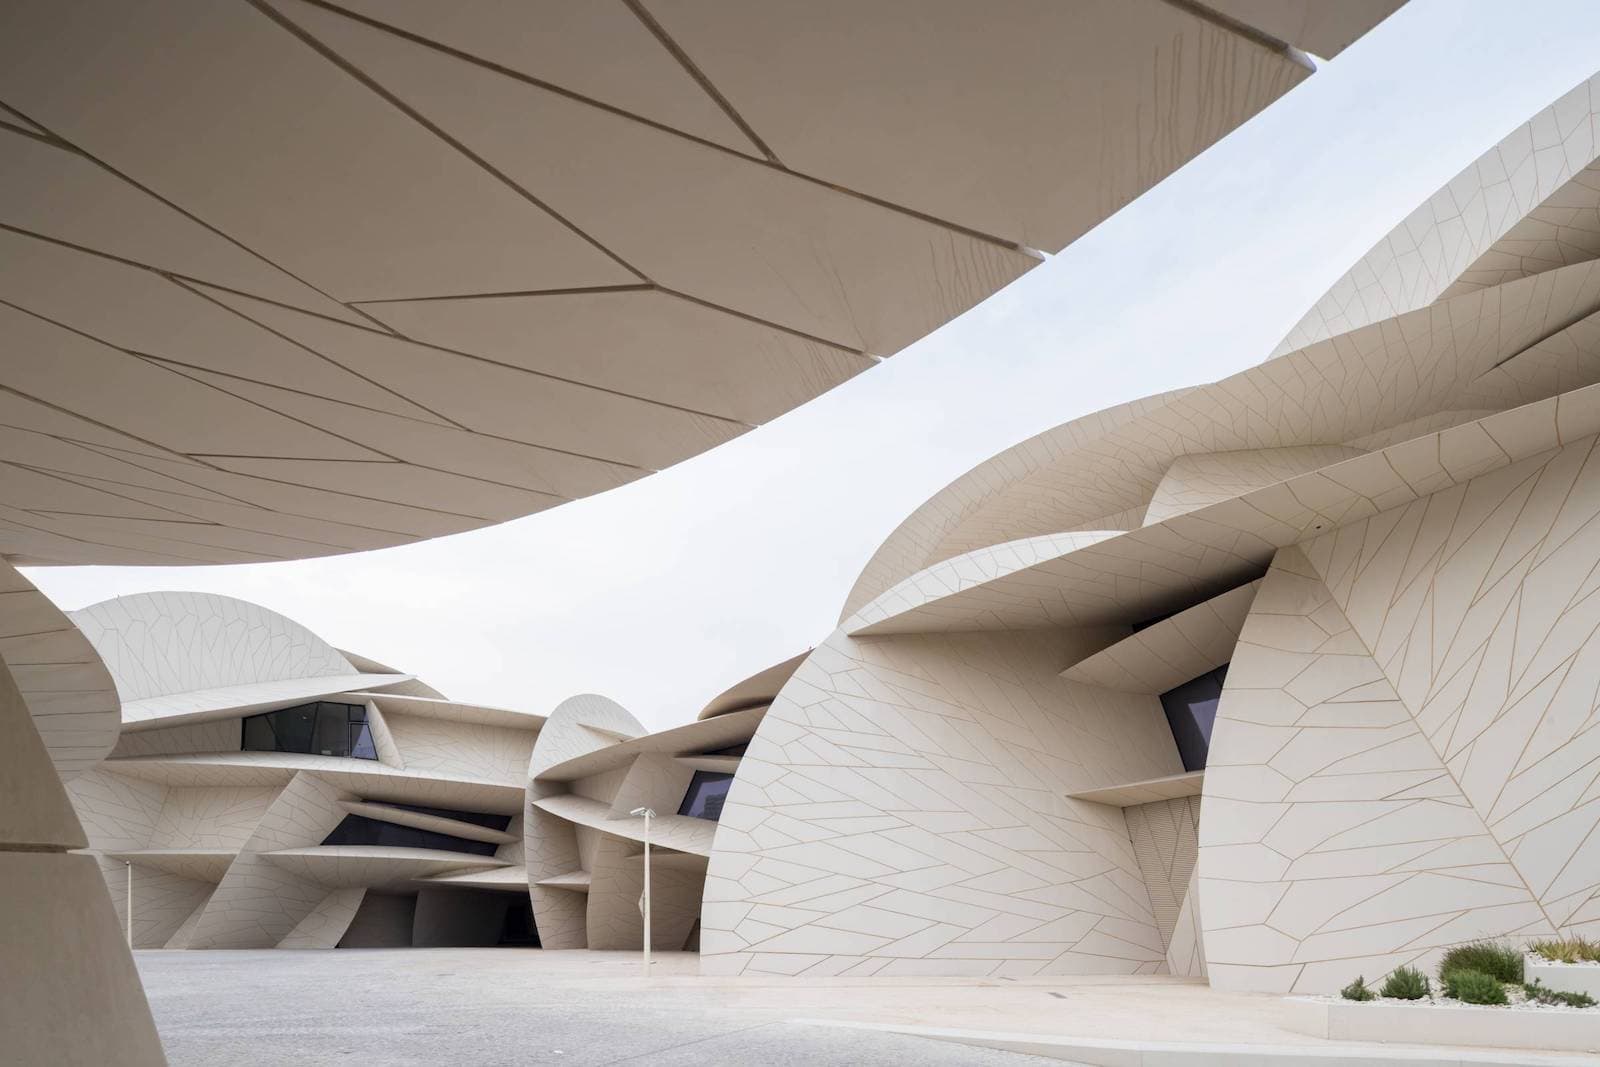 Das National Museum of Qatar von Jean Nouvel